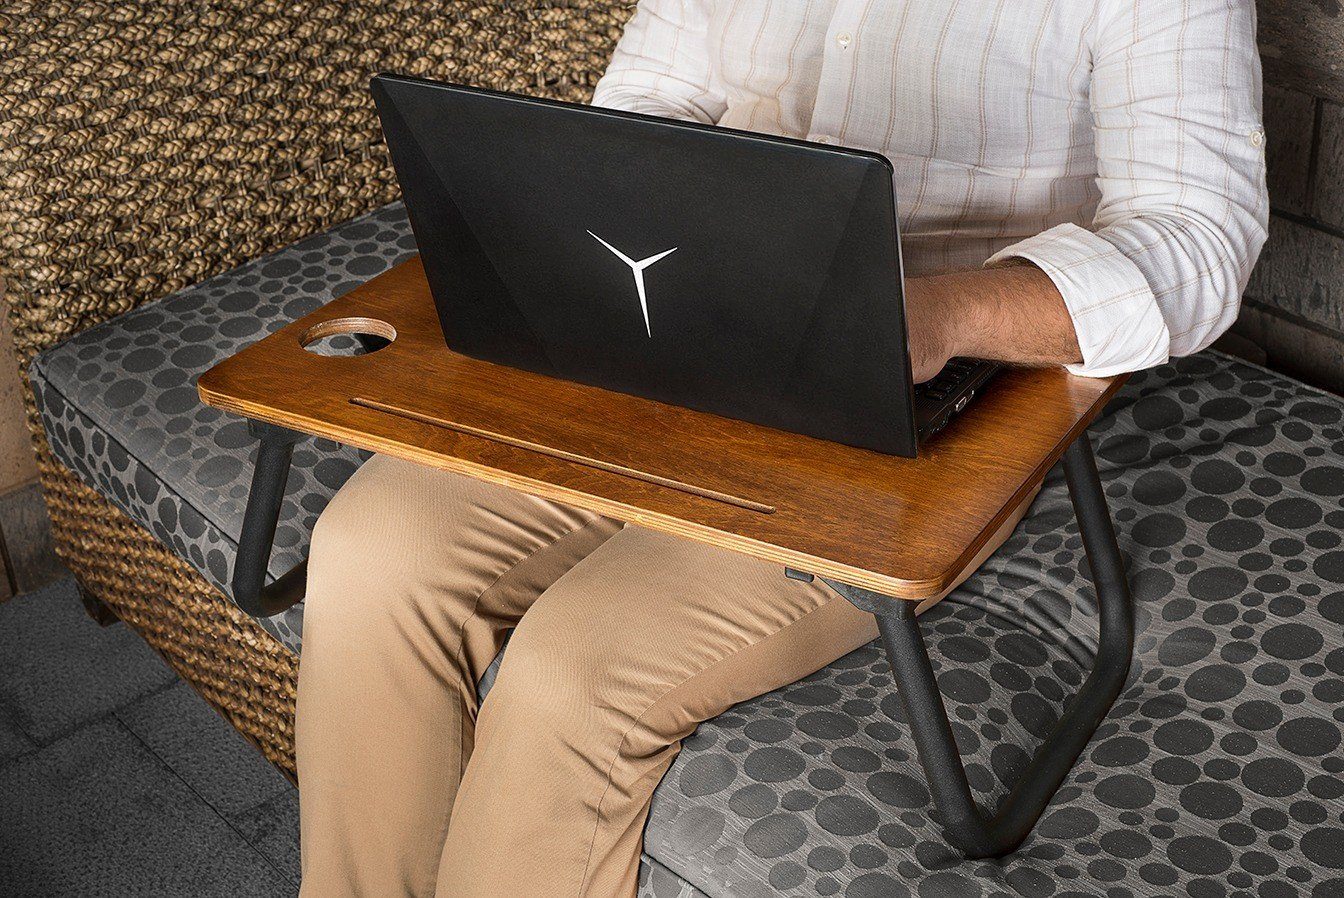 Laptop SehpaVLV,Schwarz, 45x60x20 100% cm, Decor Skye Couchtisch Birkenbaum